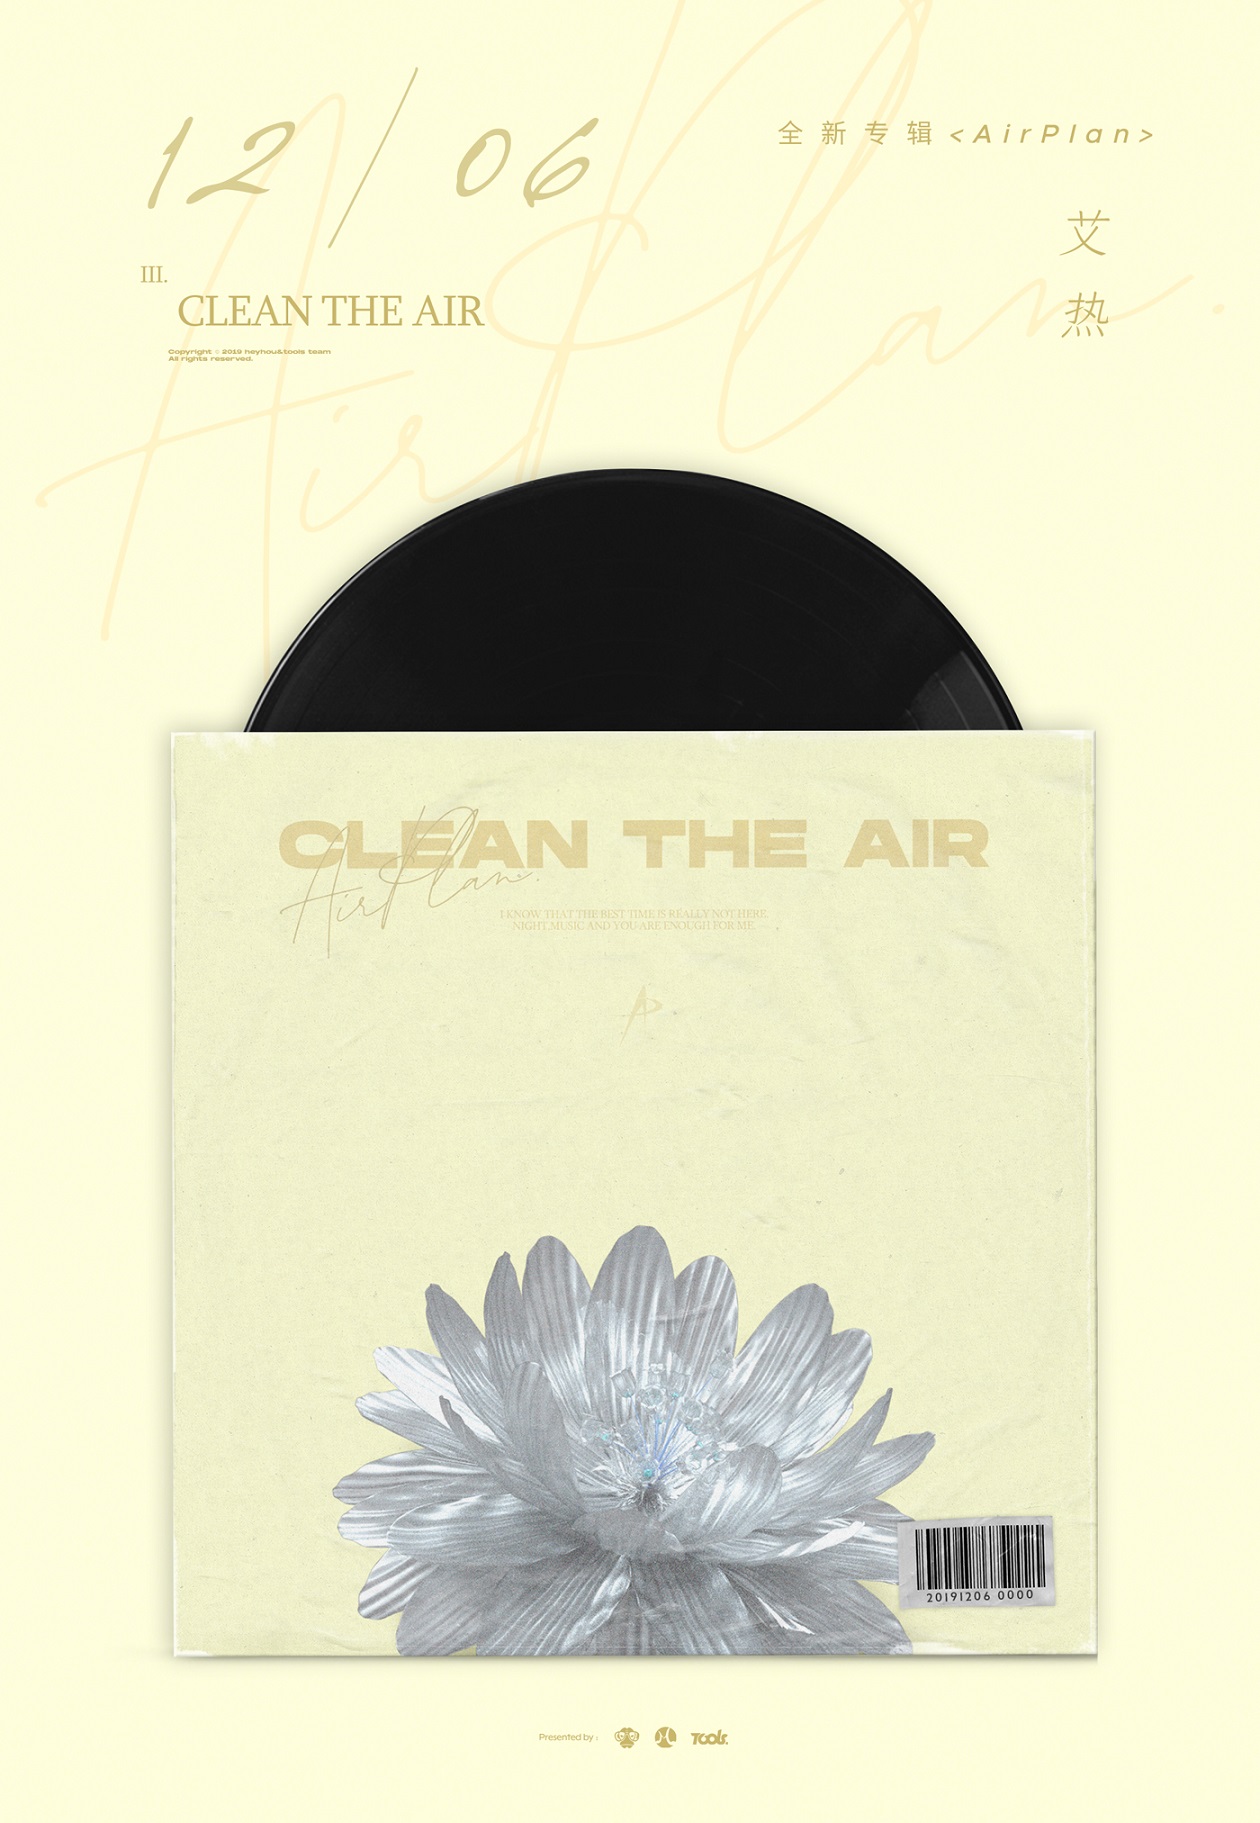 艾热全新专辑《Air Plan》强势上线 玩转多元风格的尝试与突破